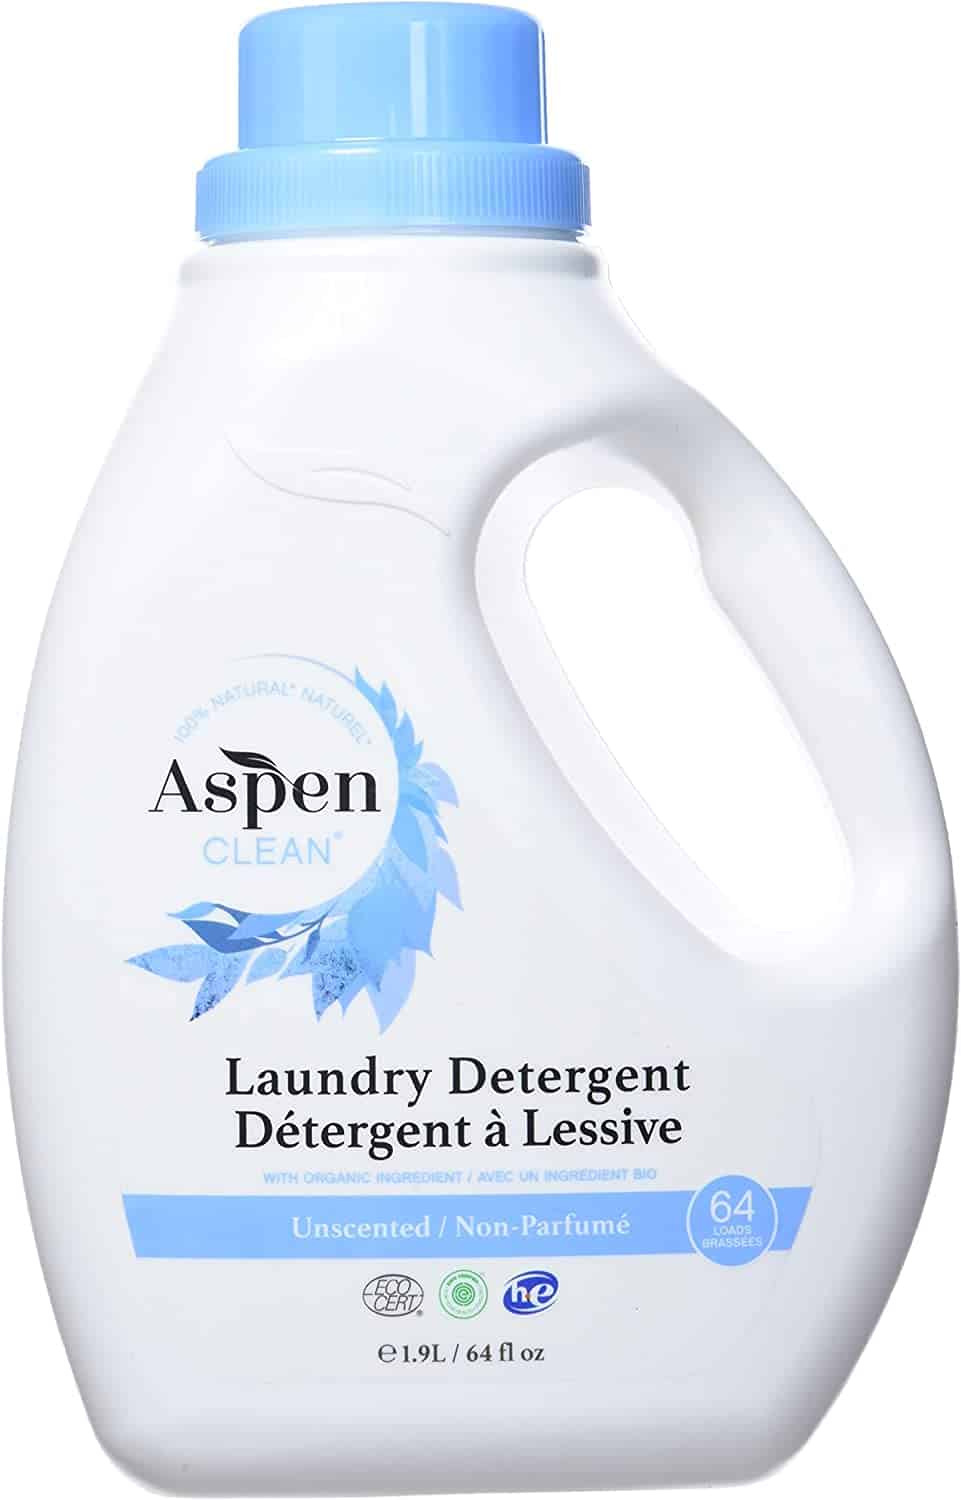 A bottle of Aspen Clean laundry detergent. 